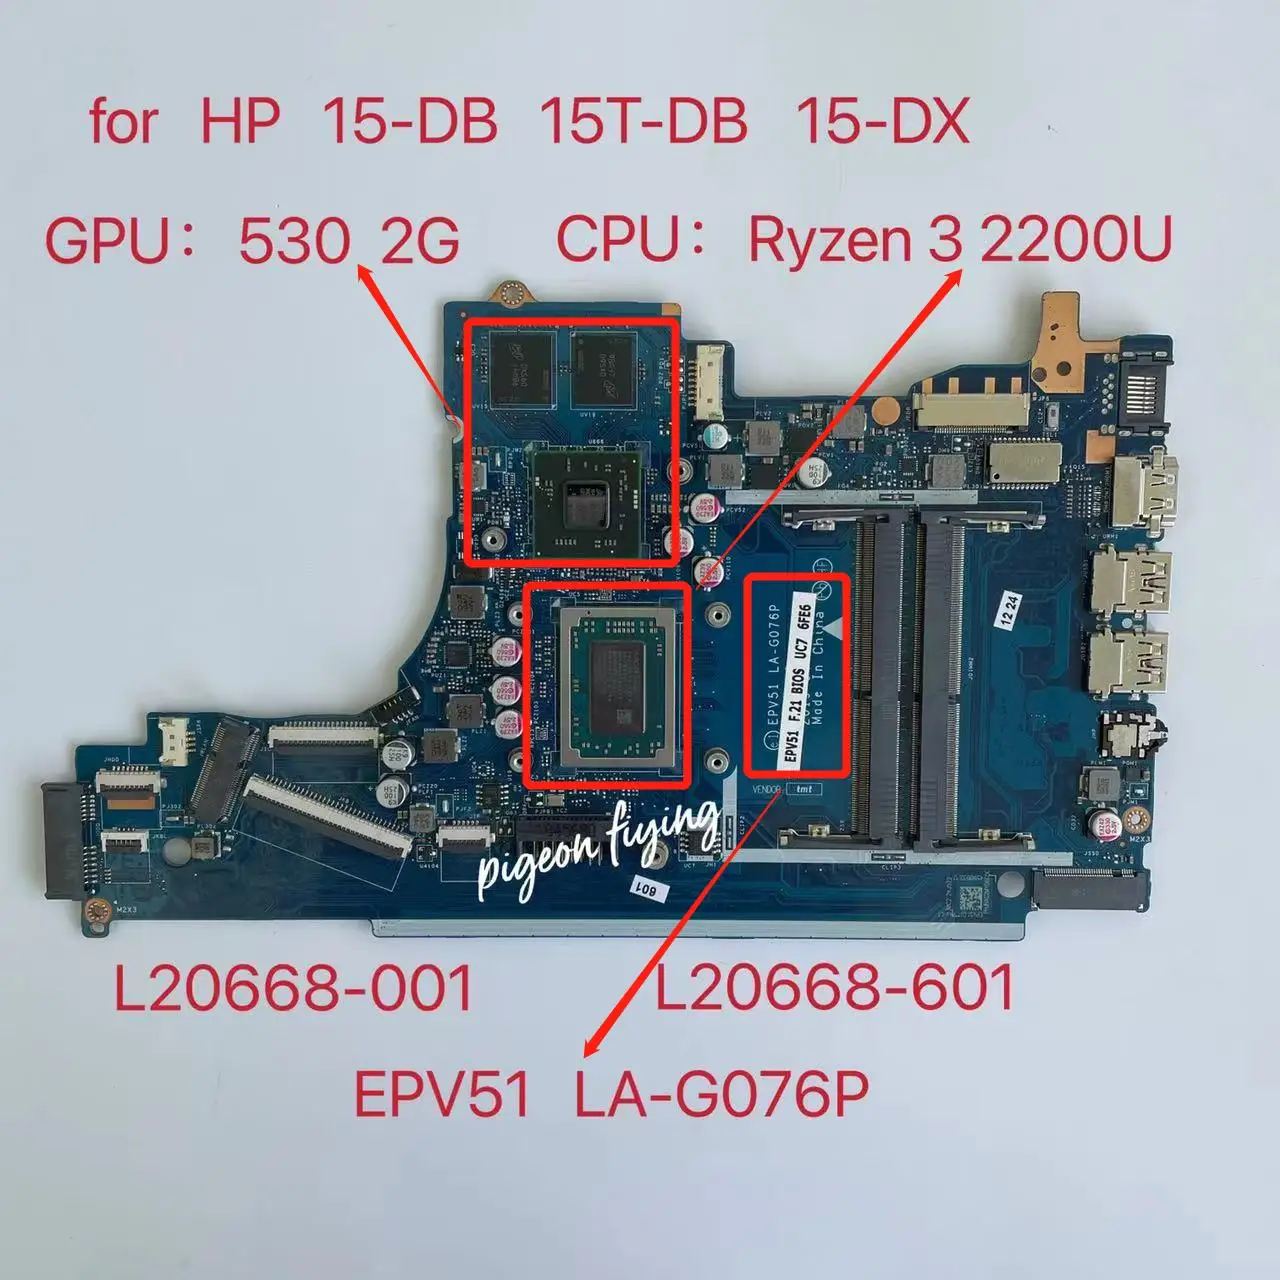 

EPV51 LA-G076P For HP 15T-DB 15-DB 15-DX Laptop Motherboard AMD Ryzen 3 2200U CPU Radeon 530 GPU DDR4 L20668-001 L20668-601